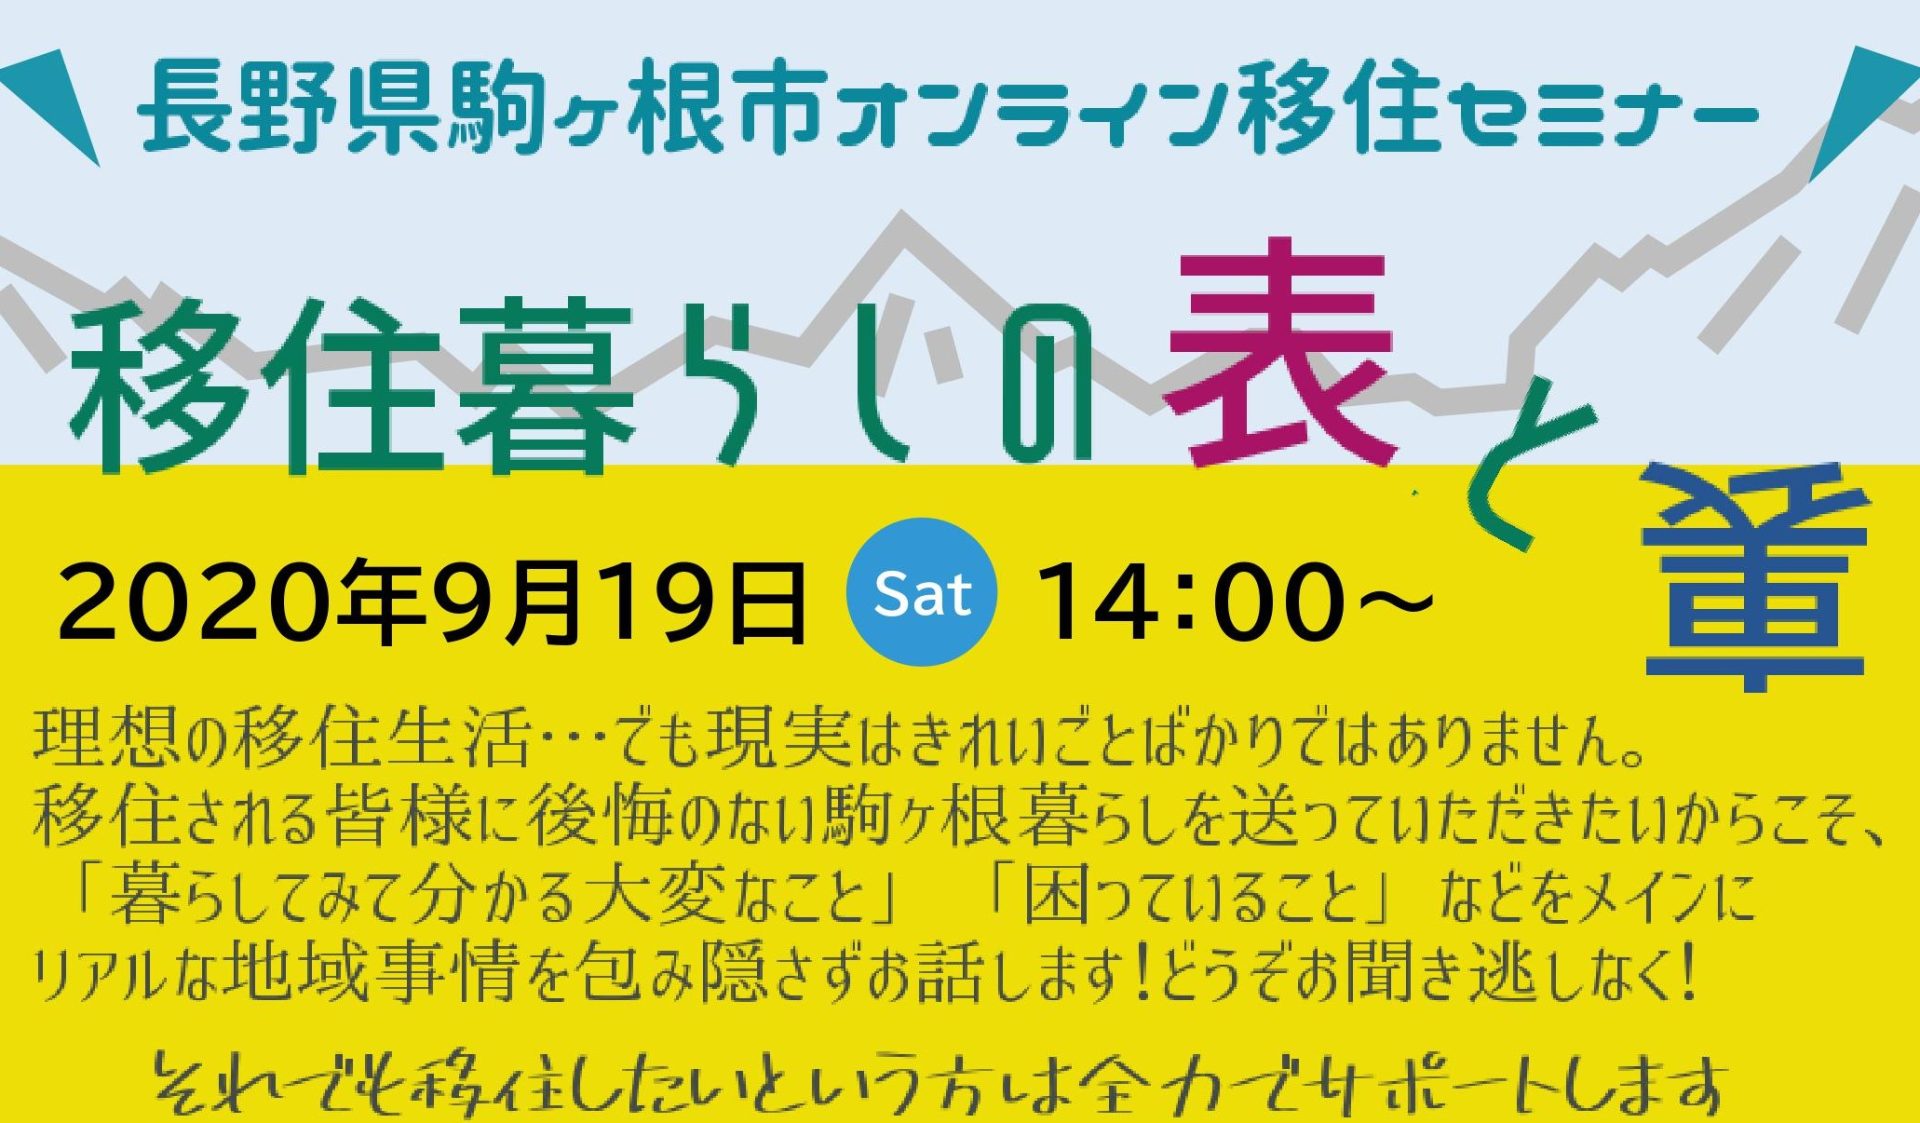 信州駒ヶ根「春」体感ツアー2018 | 移住関連イベント情報